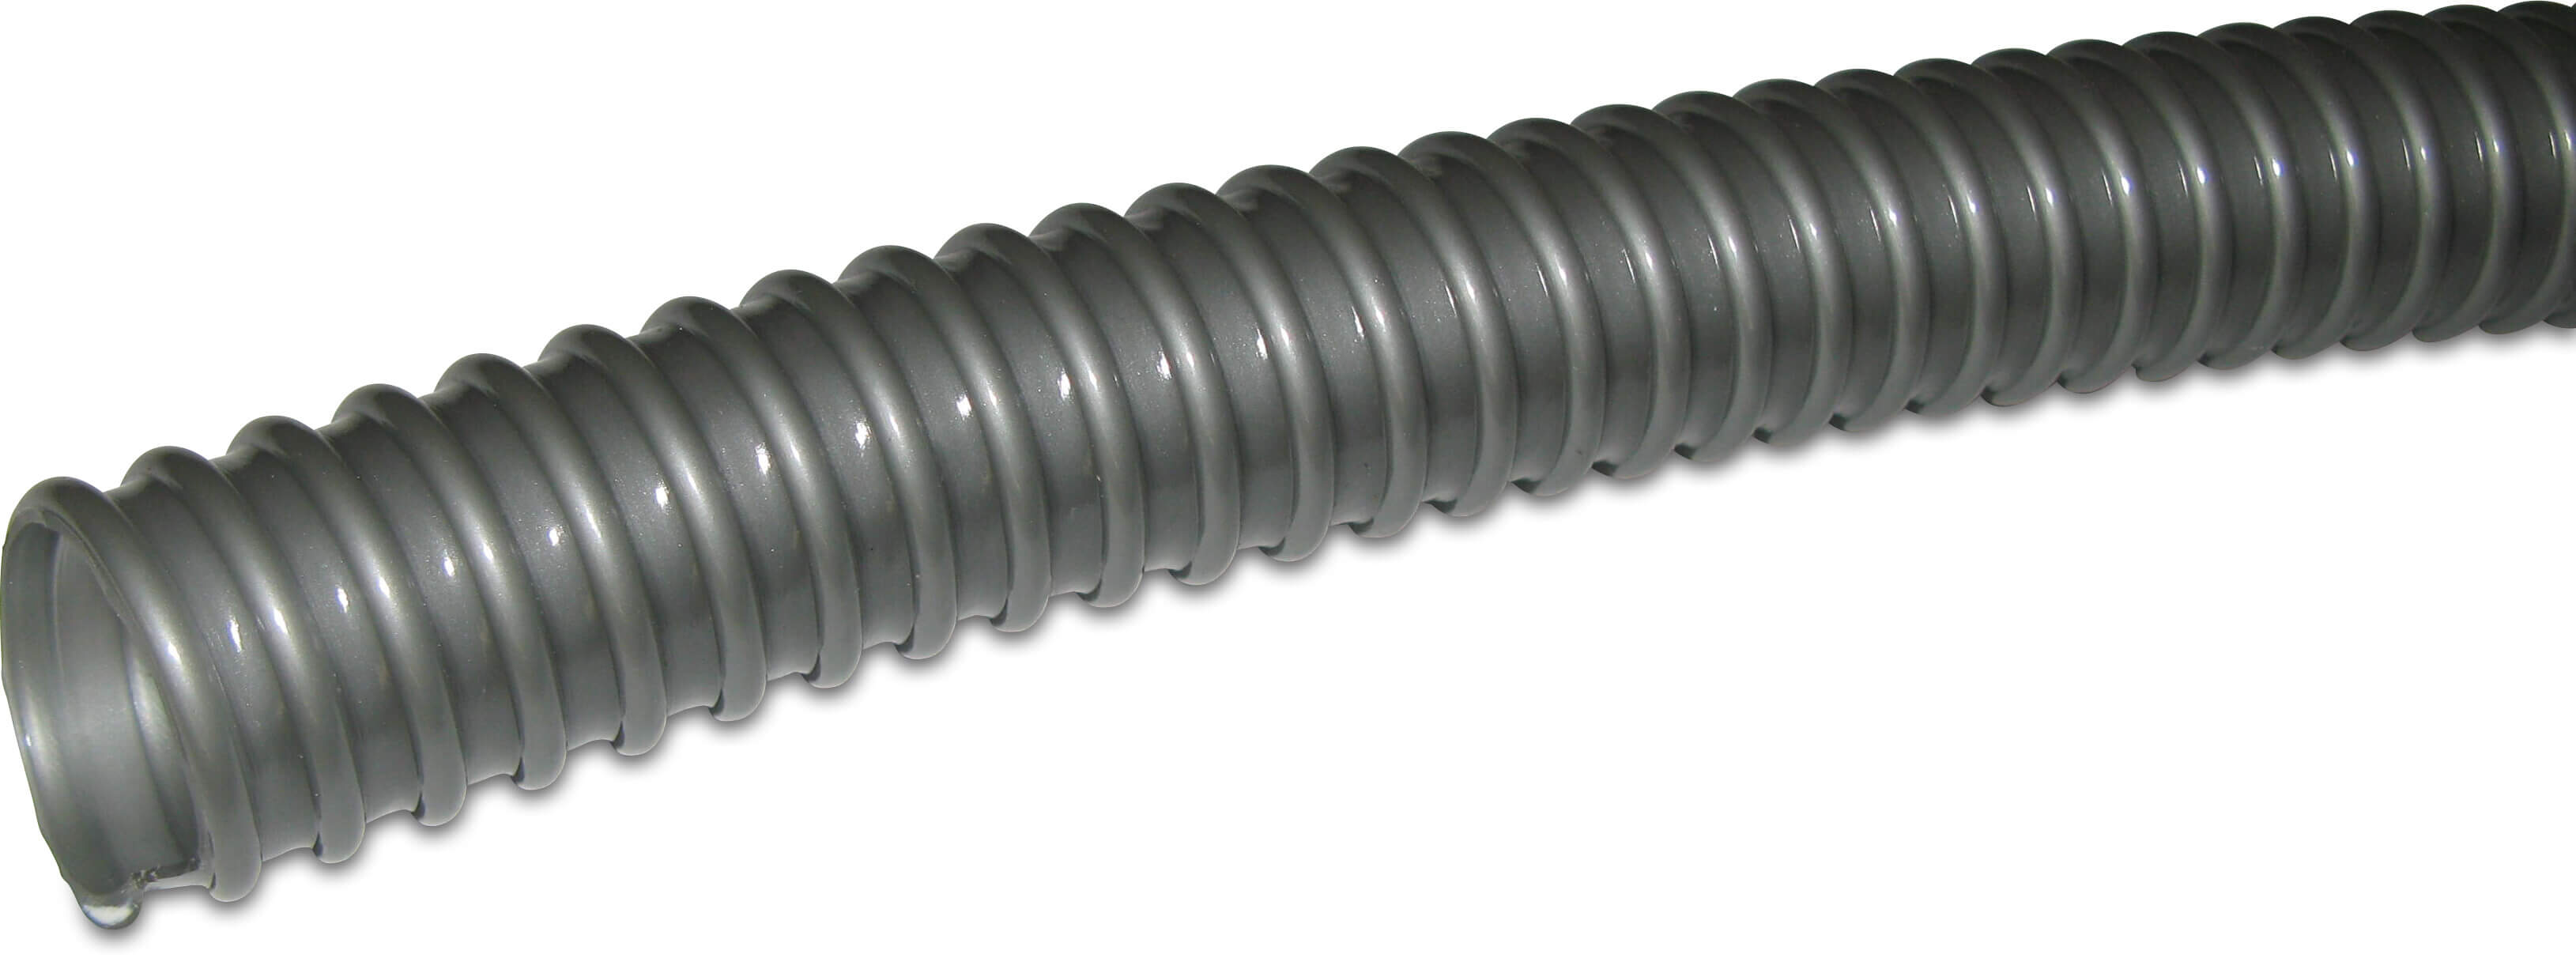 Profec Dammsugs-slang PVC 25 mm 0.6bar grå 30m